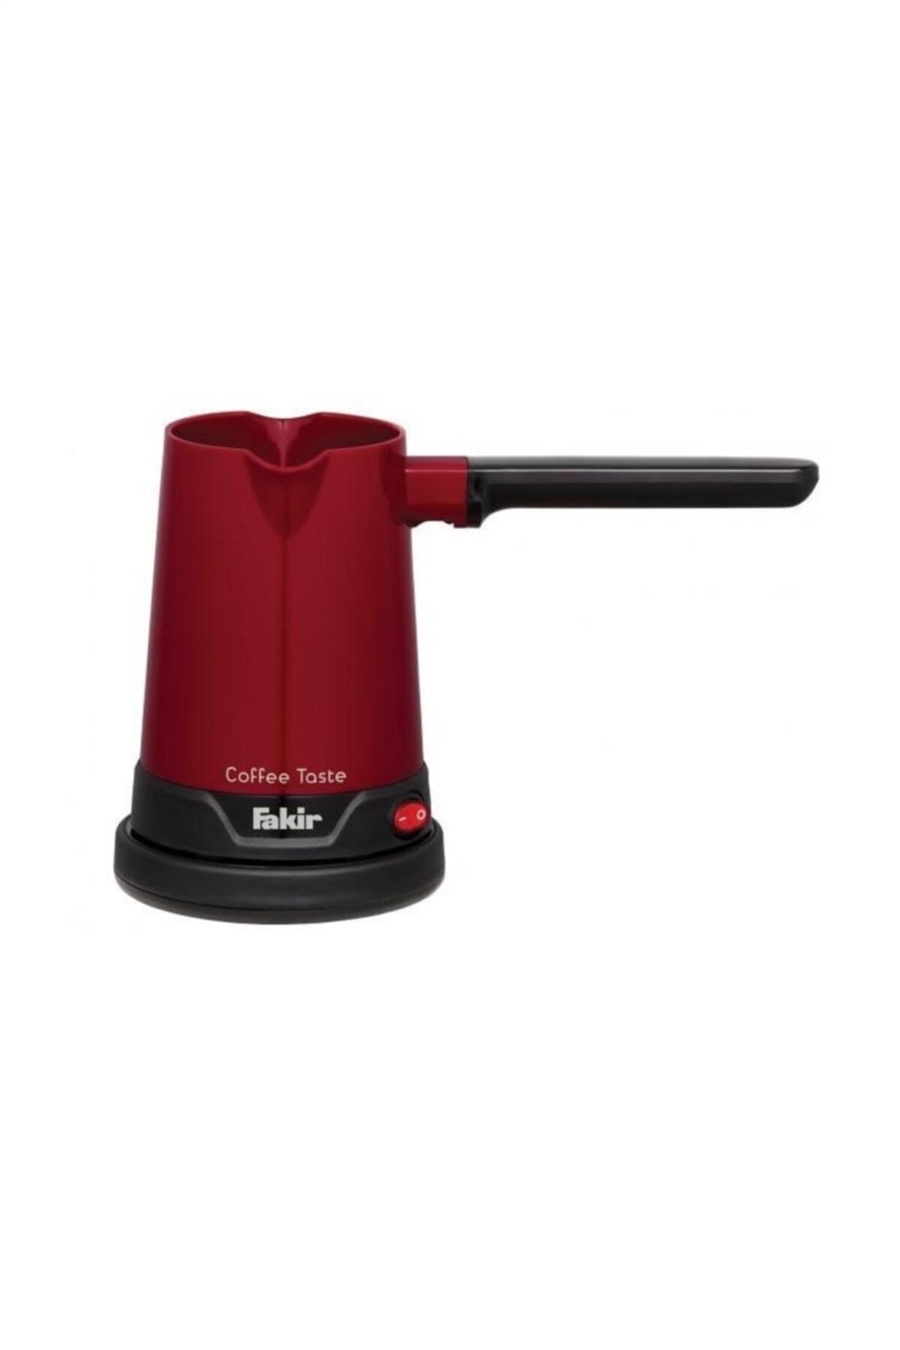 Fakir Coffee Taste Türk Kahve Makinesi (Kırmızı Renk)